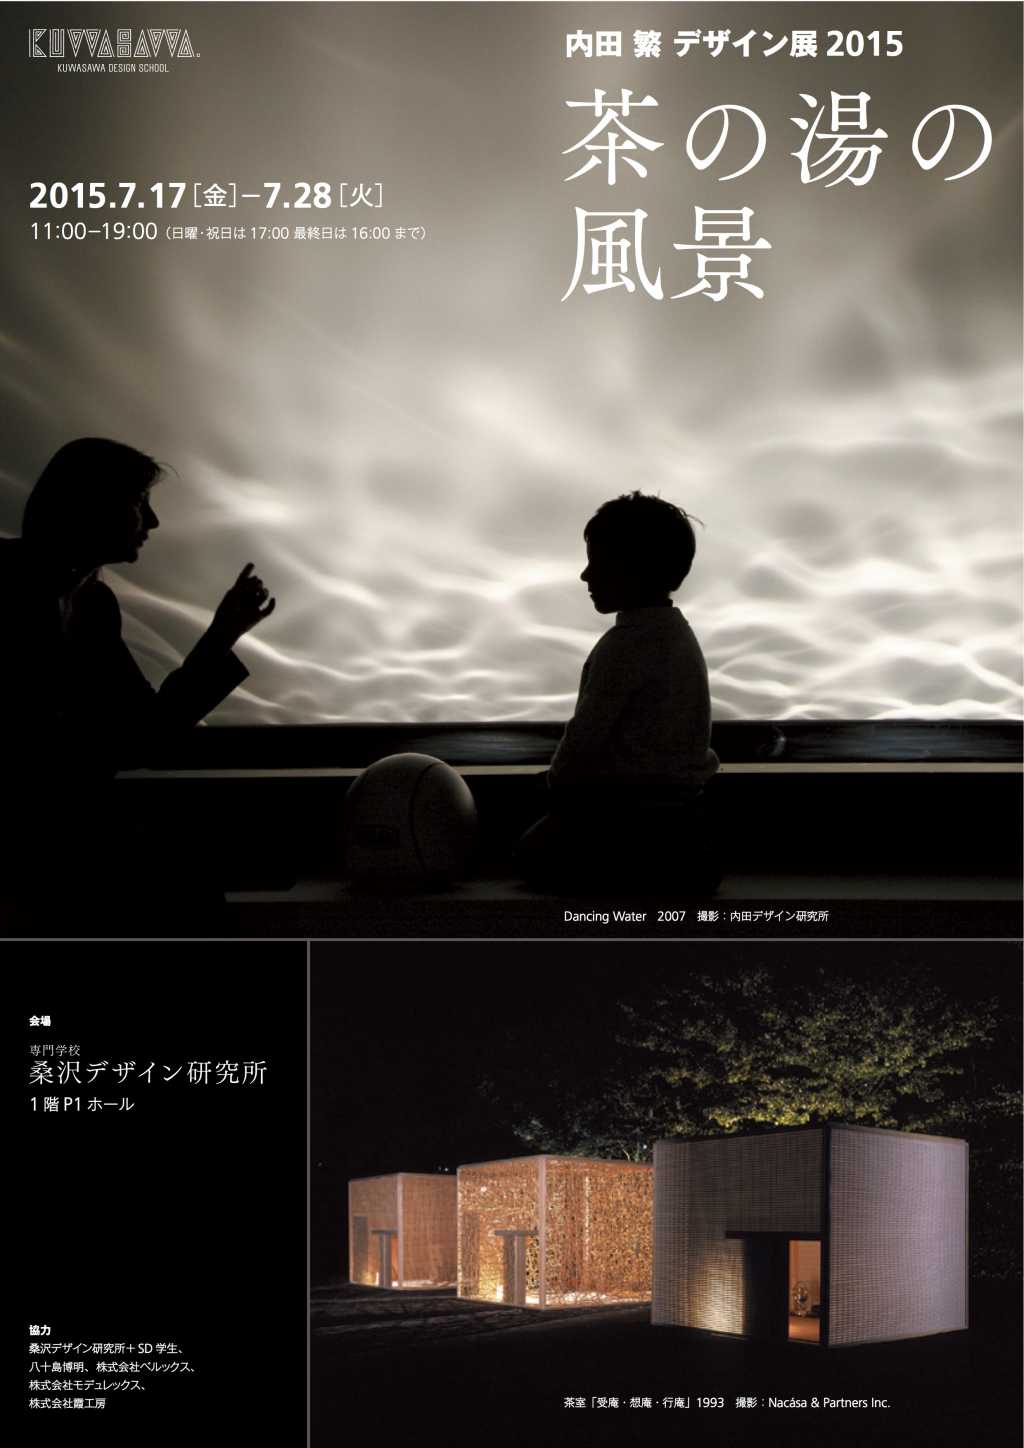 内田繁デザイン展茶の湯の風景 のコピー